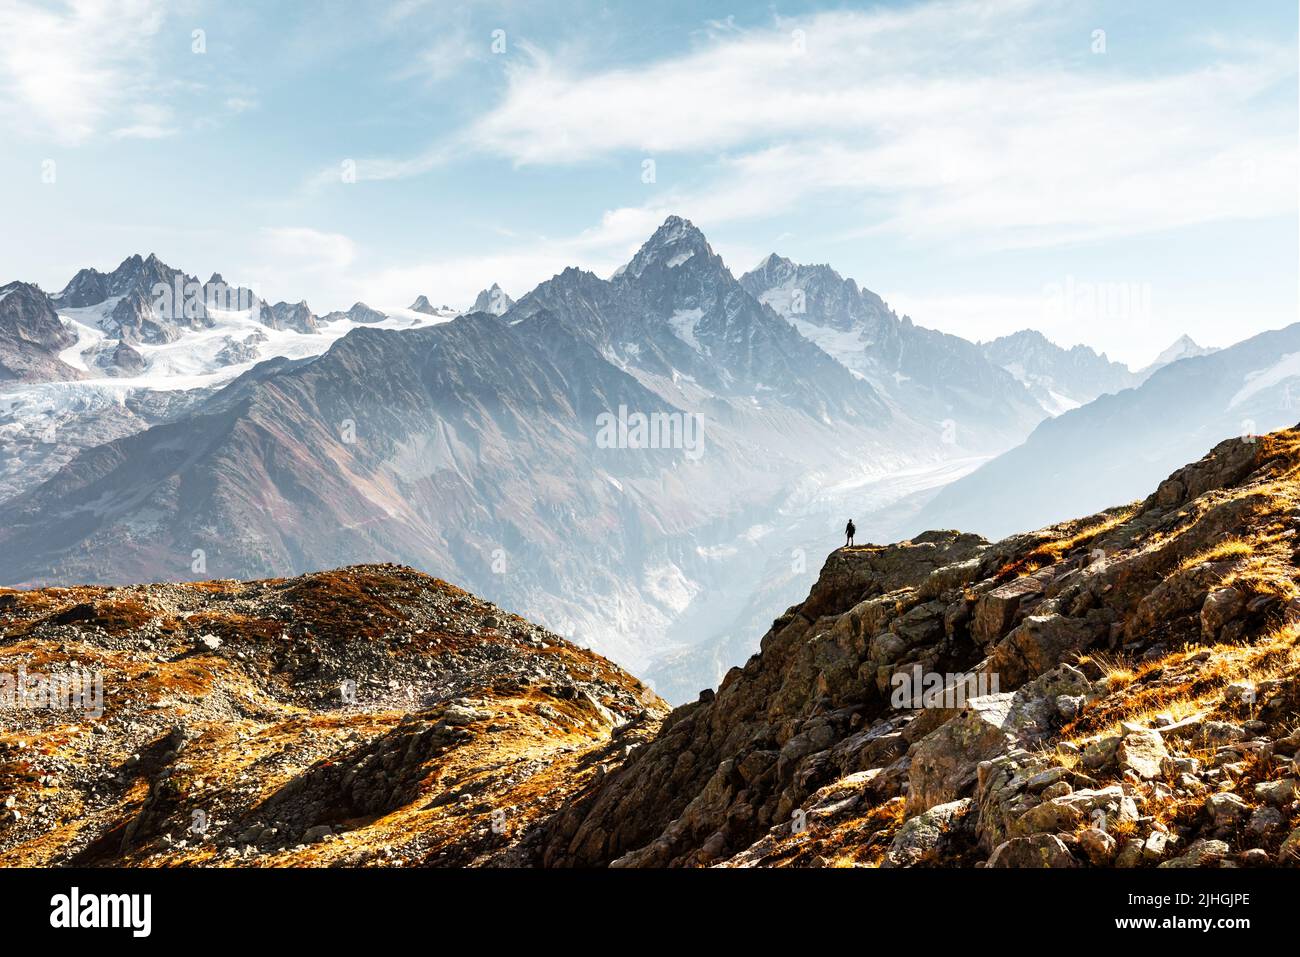 Tolle Aussicht auf die Berge Monte Bianco mit Touristen auf einen Vordergrund. Vallon de Berard Nature Preserve, Chamonix, Graian Alps. Landschaftsfotografie Stockfoto